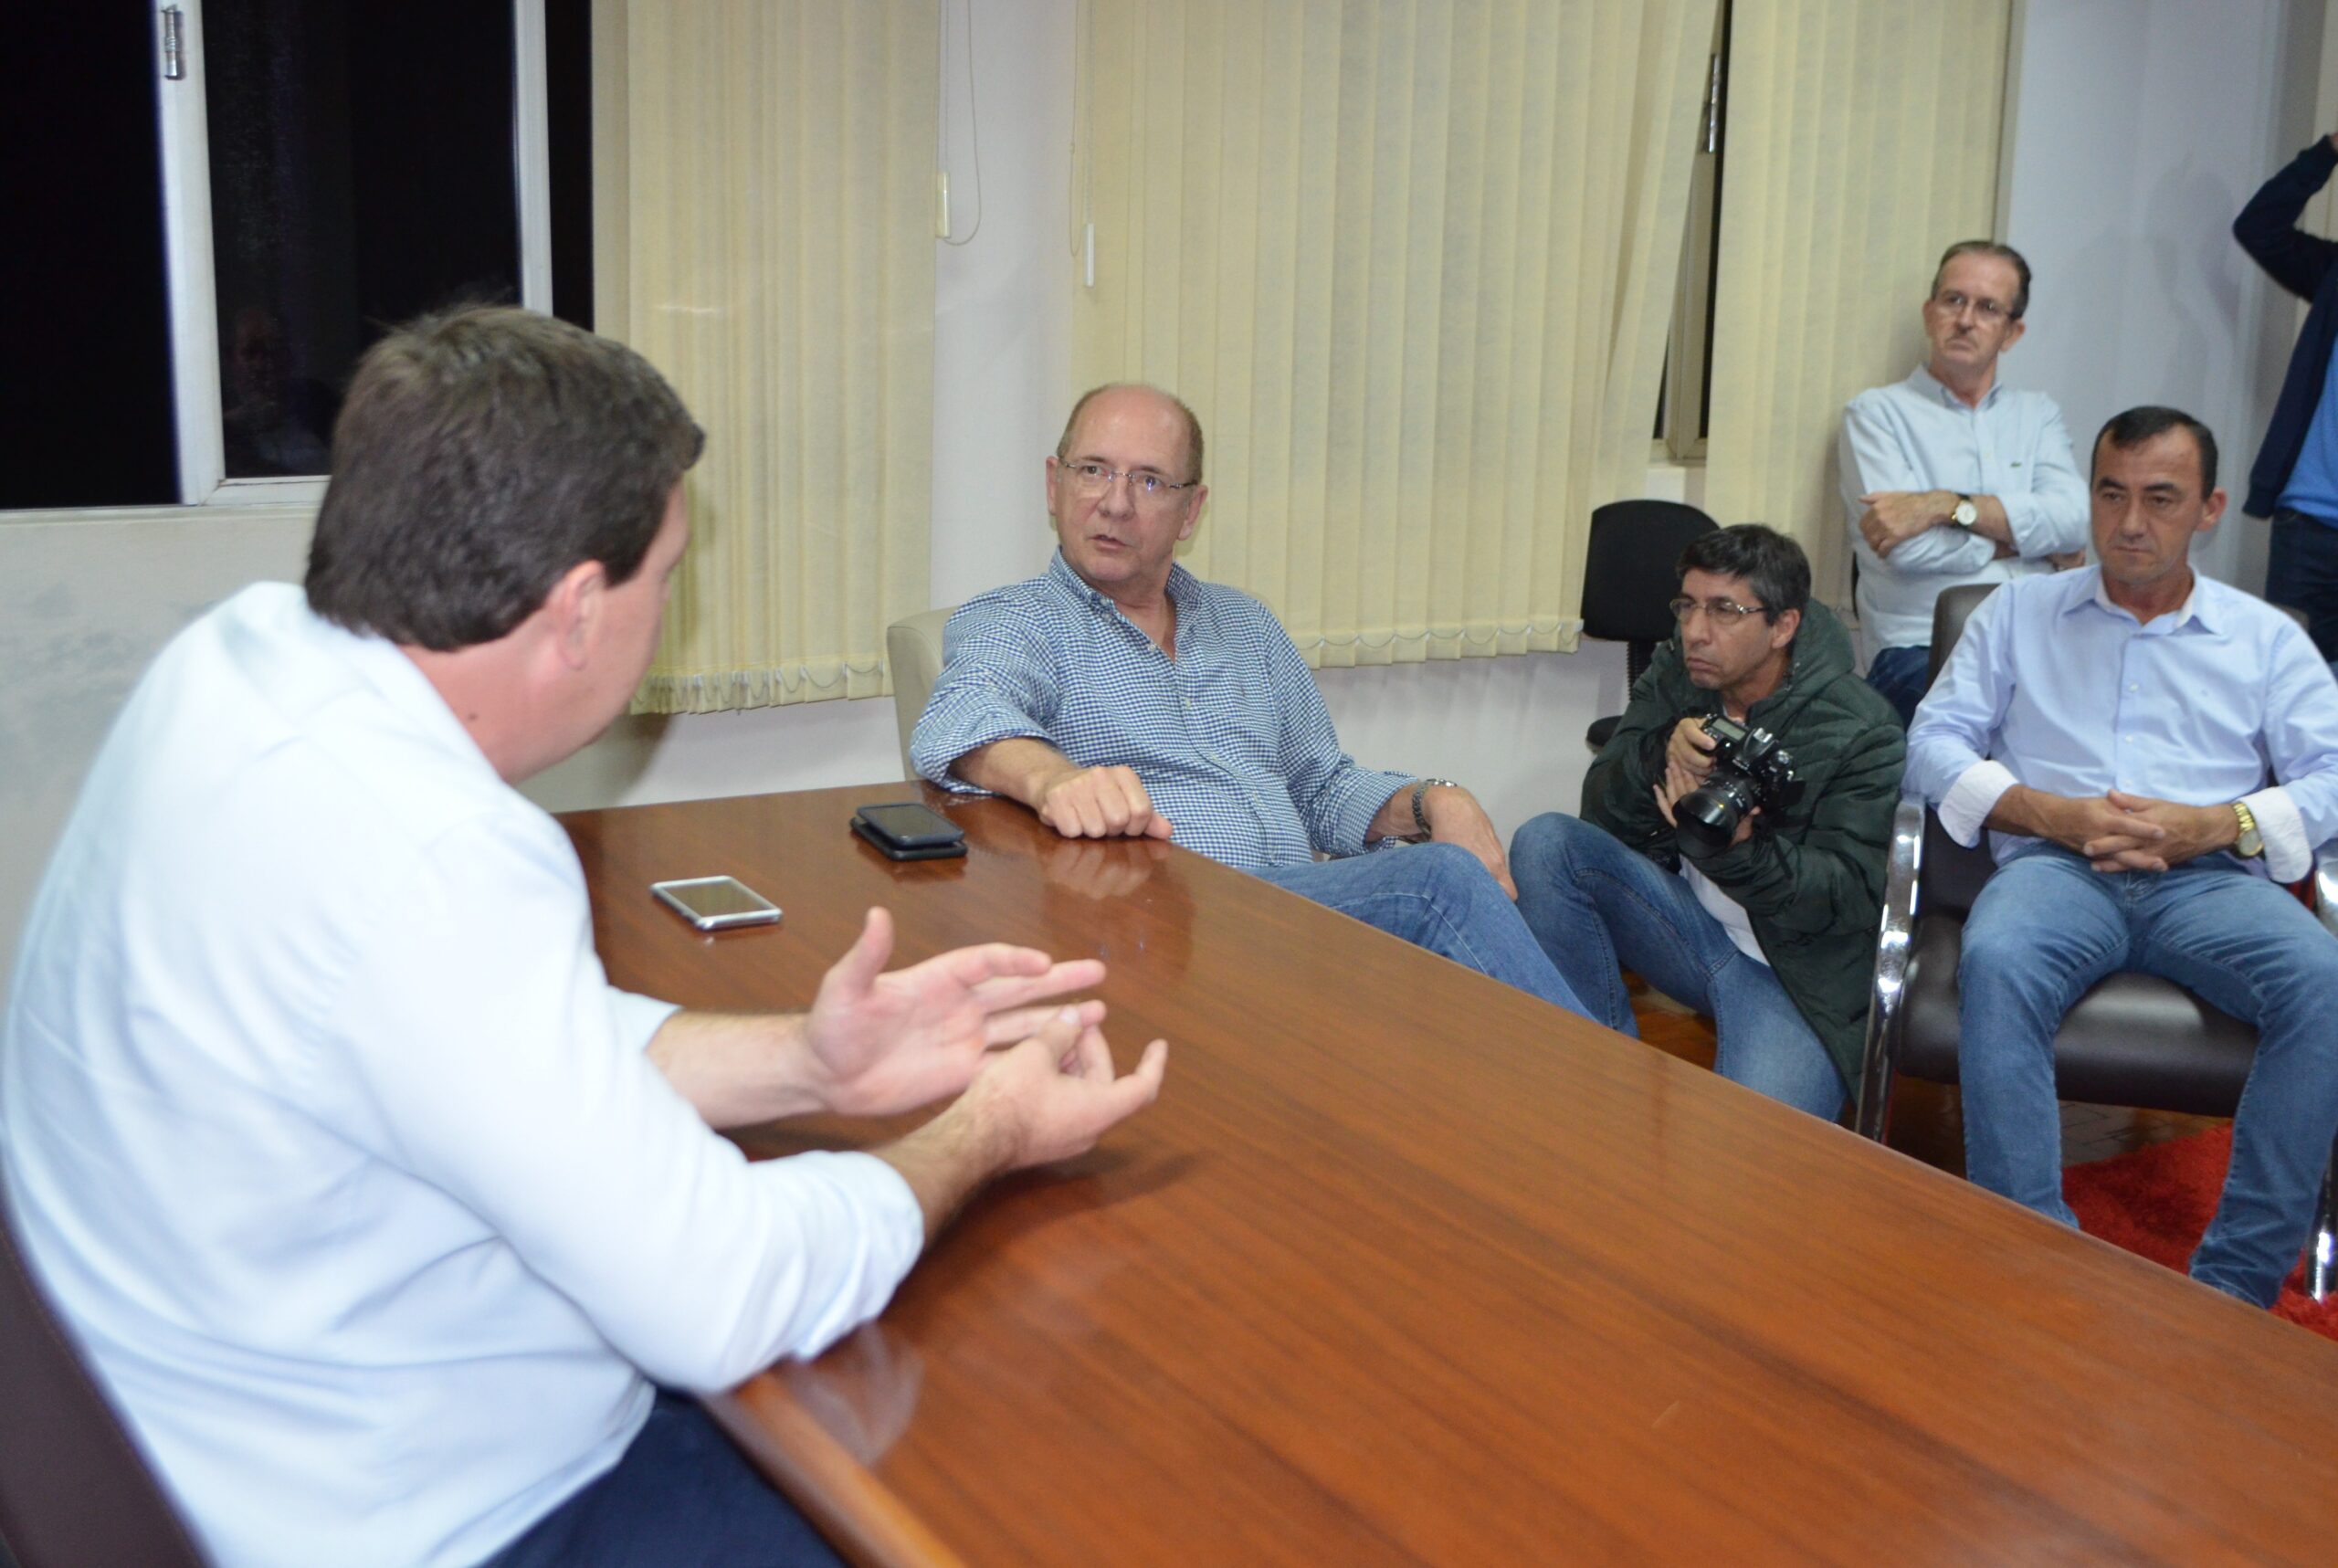 Senador Paulo Bauer esteve visitando a administração municipal, sendo recebido pelo prefeito Daniel Kothe, vice-prefeito Sadan e outras autoridades e lideranças saudadenses